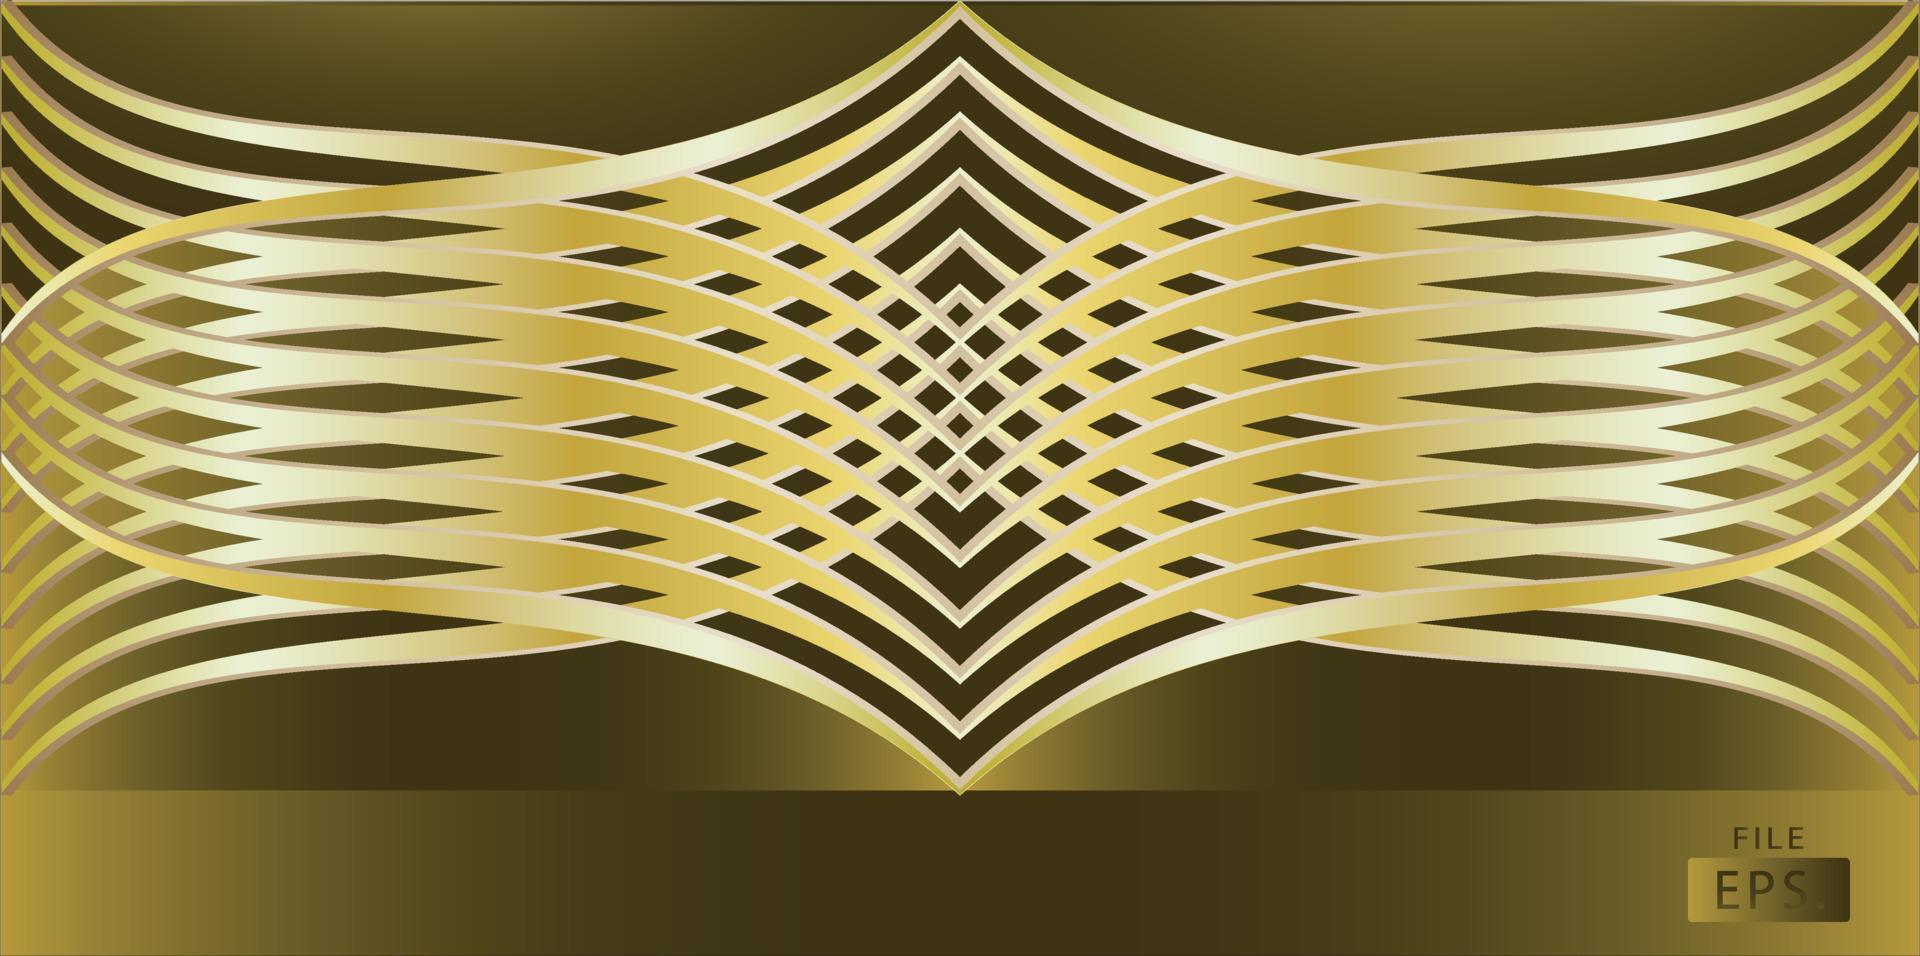 immagine vettoriale a spirale della linea dorata